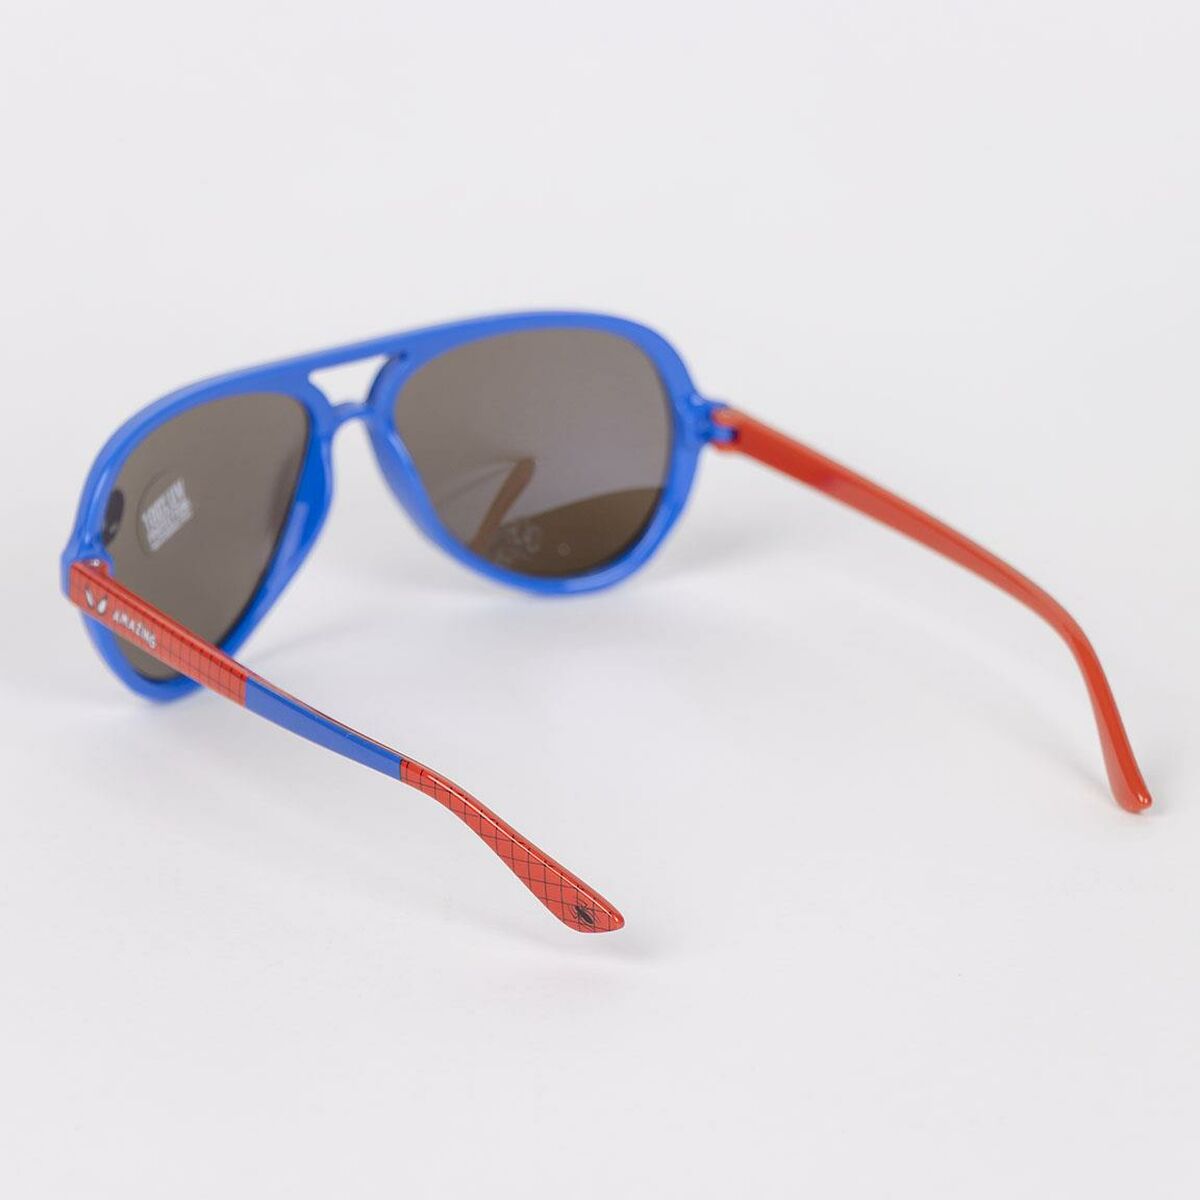 Kindersonnenbrille Spider-Man Blau Rot